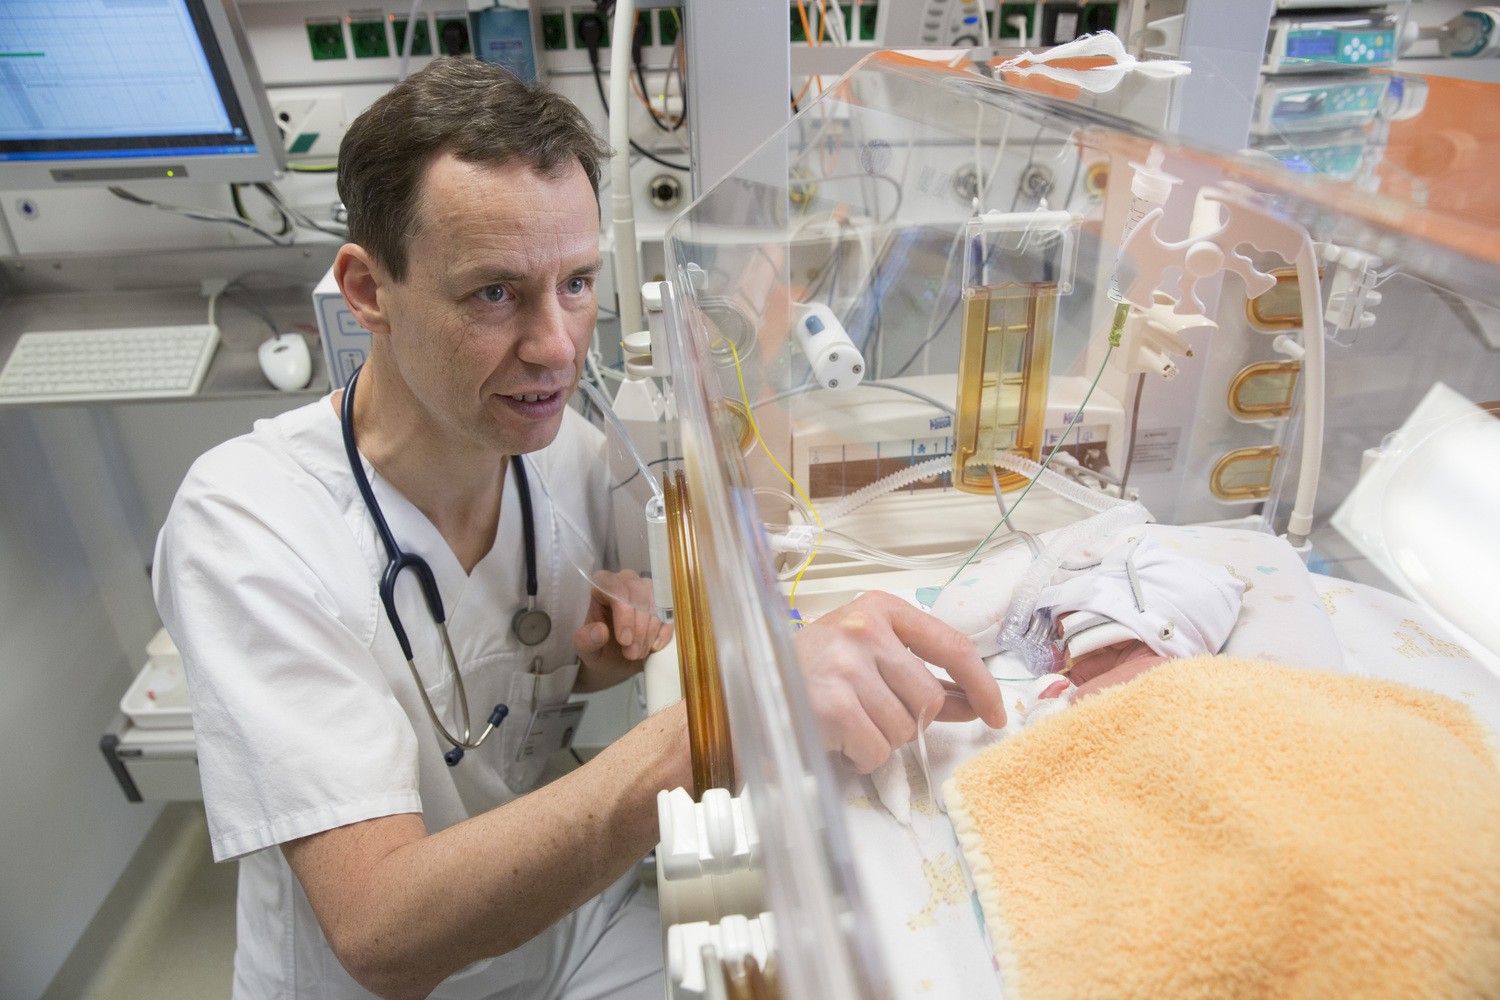 An der von Prof. Ulrich Thome geleiteten Abteilung für Neonatologie am UKL sind Mehrlingsfrühgeborene gar nicht mal so selten. Ihre Familien werden von ihm und seinen Mitarbeitern am Beginn dieses neuen Lebensabschnitts umfassend betreut.